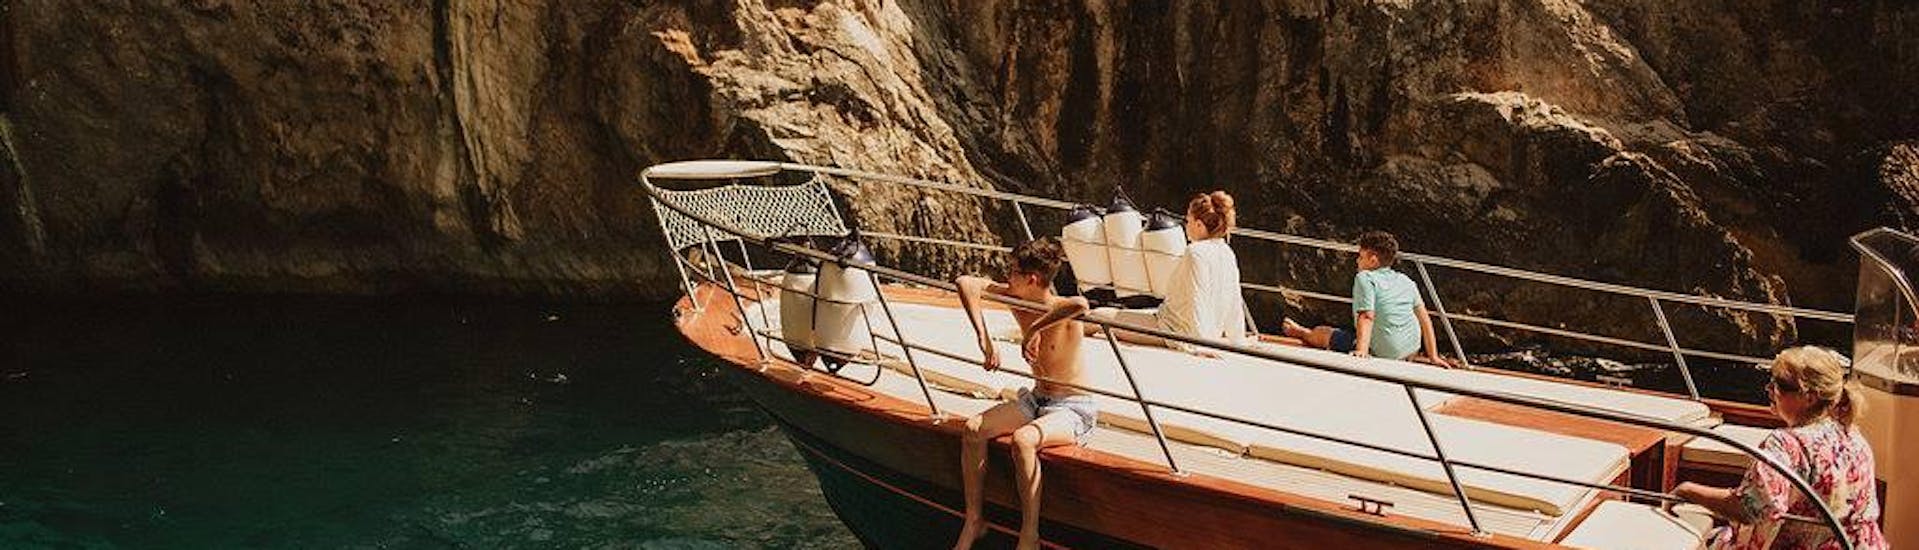 Mensen genieten van hun reis op de boot tijdens de prive-boottocht van Amalfi naar Capri en Positano met Capitano Ago.